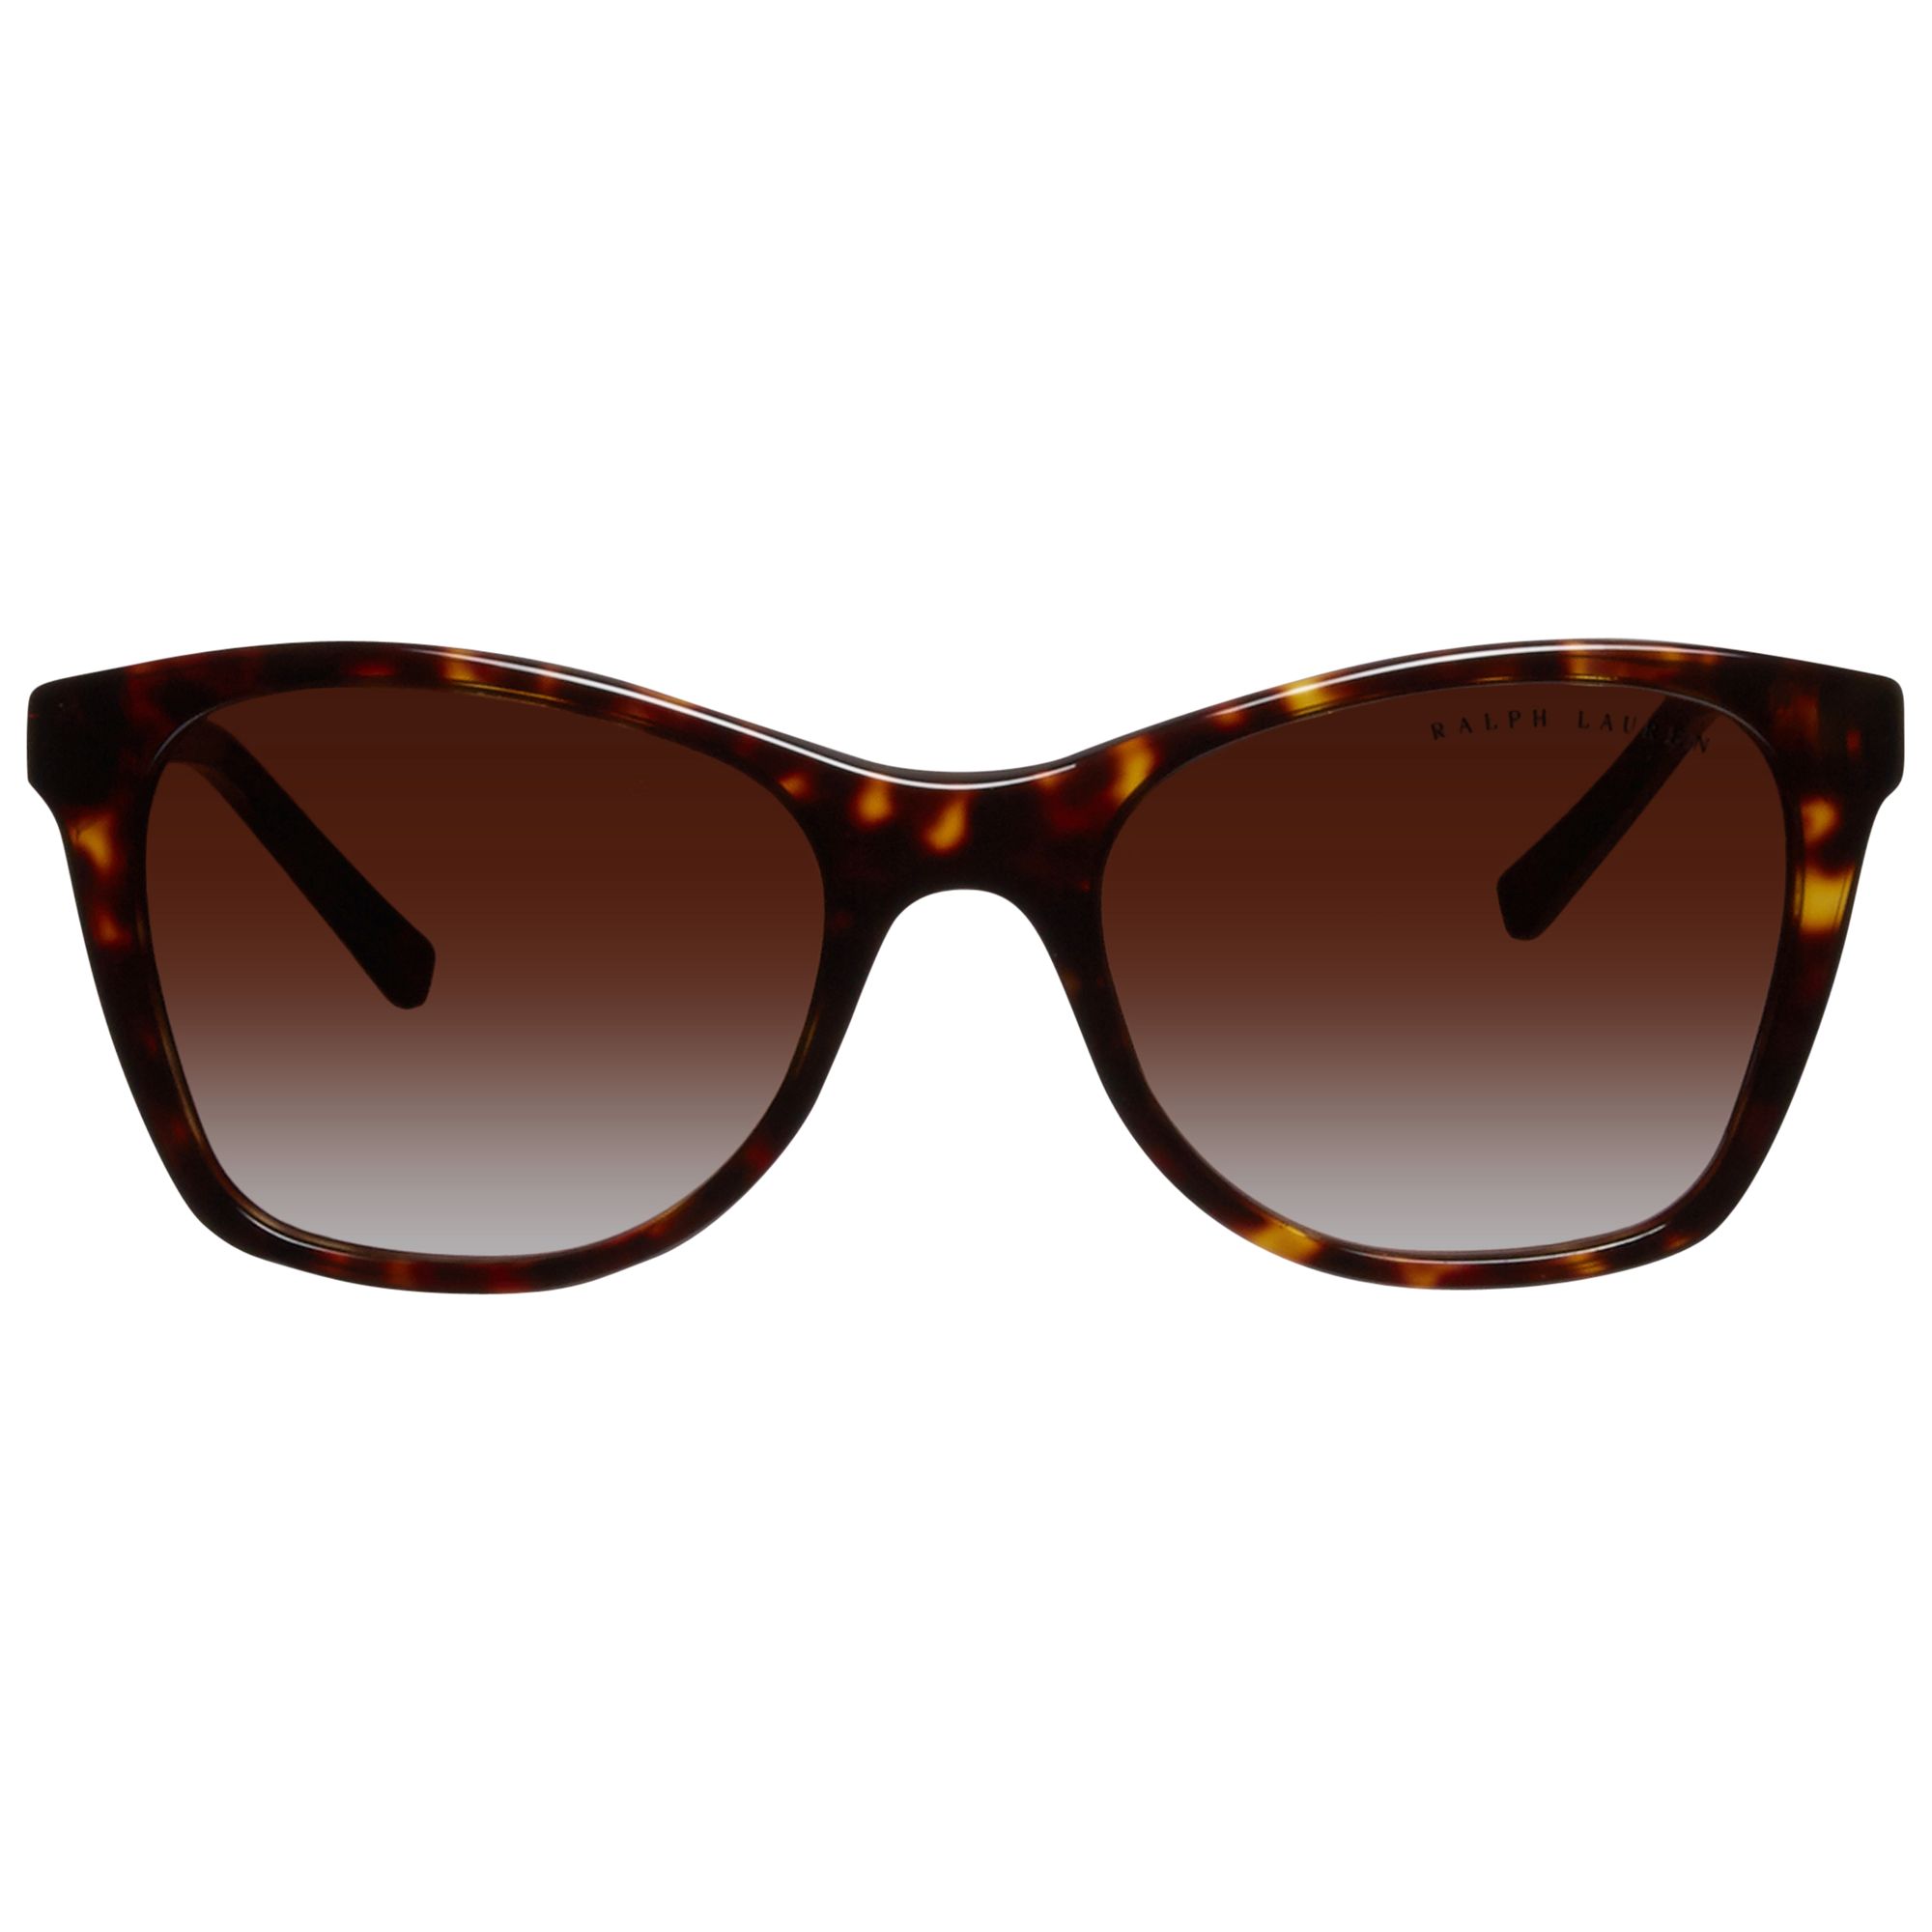 Ralph Lauren RL8113 Cat’s Eye Sunglasses